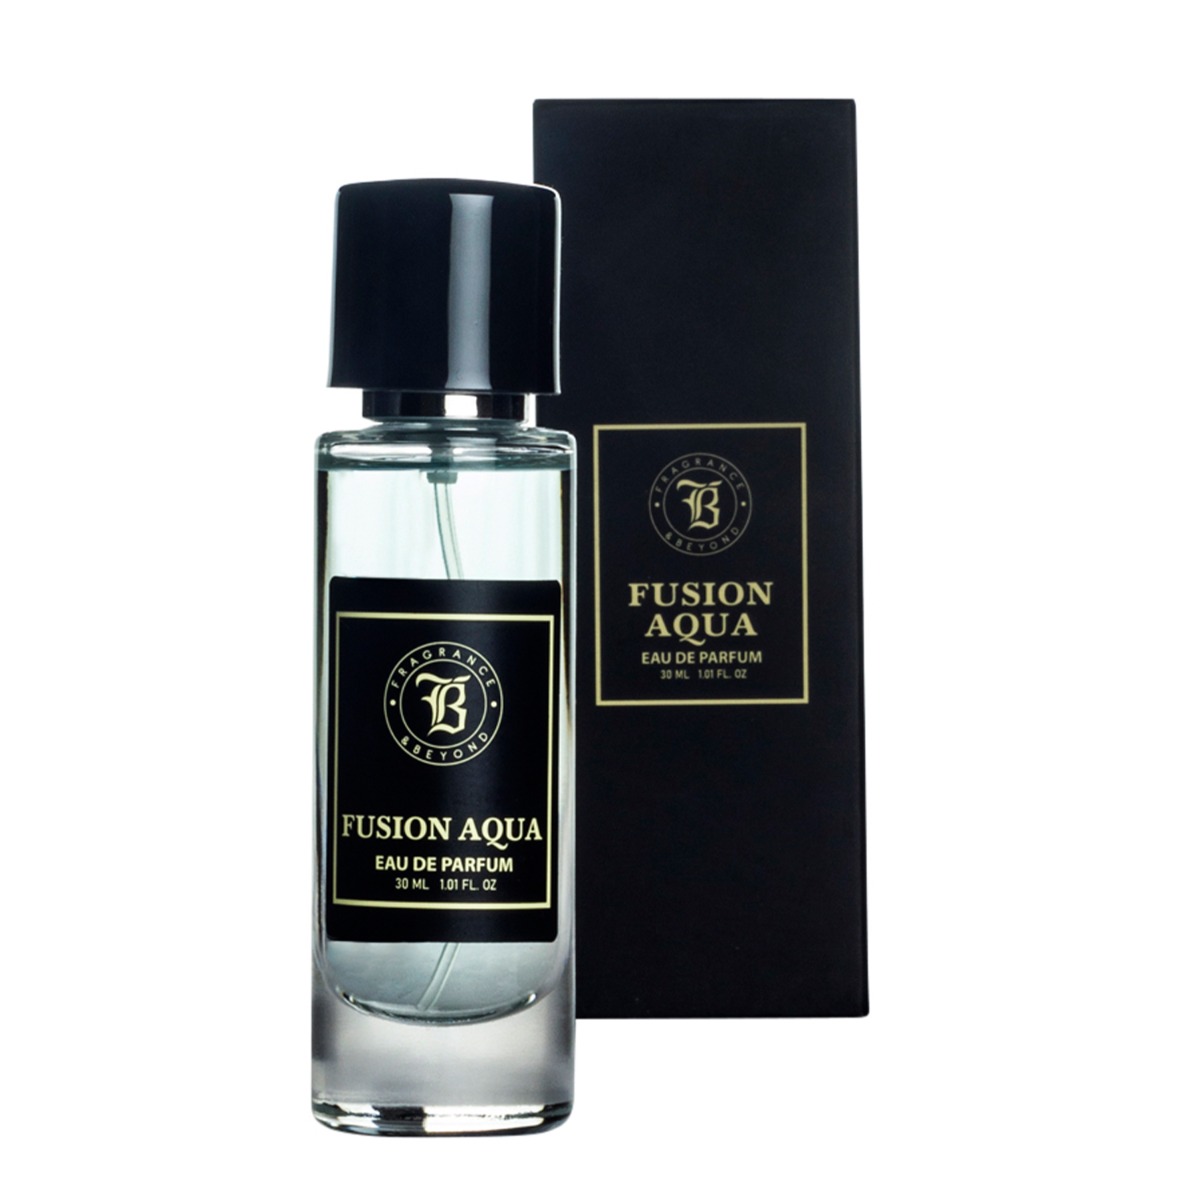 Fragrance & Beyond Fusion Aqua, Eau De Parfum (Perfume) for Men, 30ml